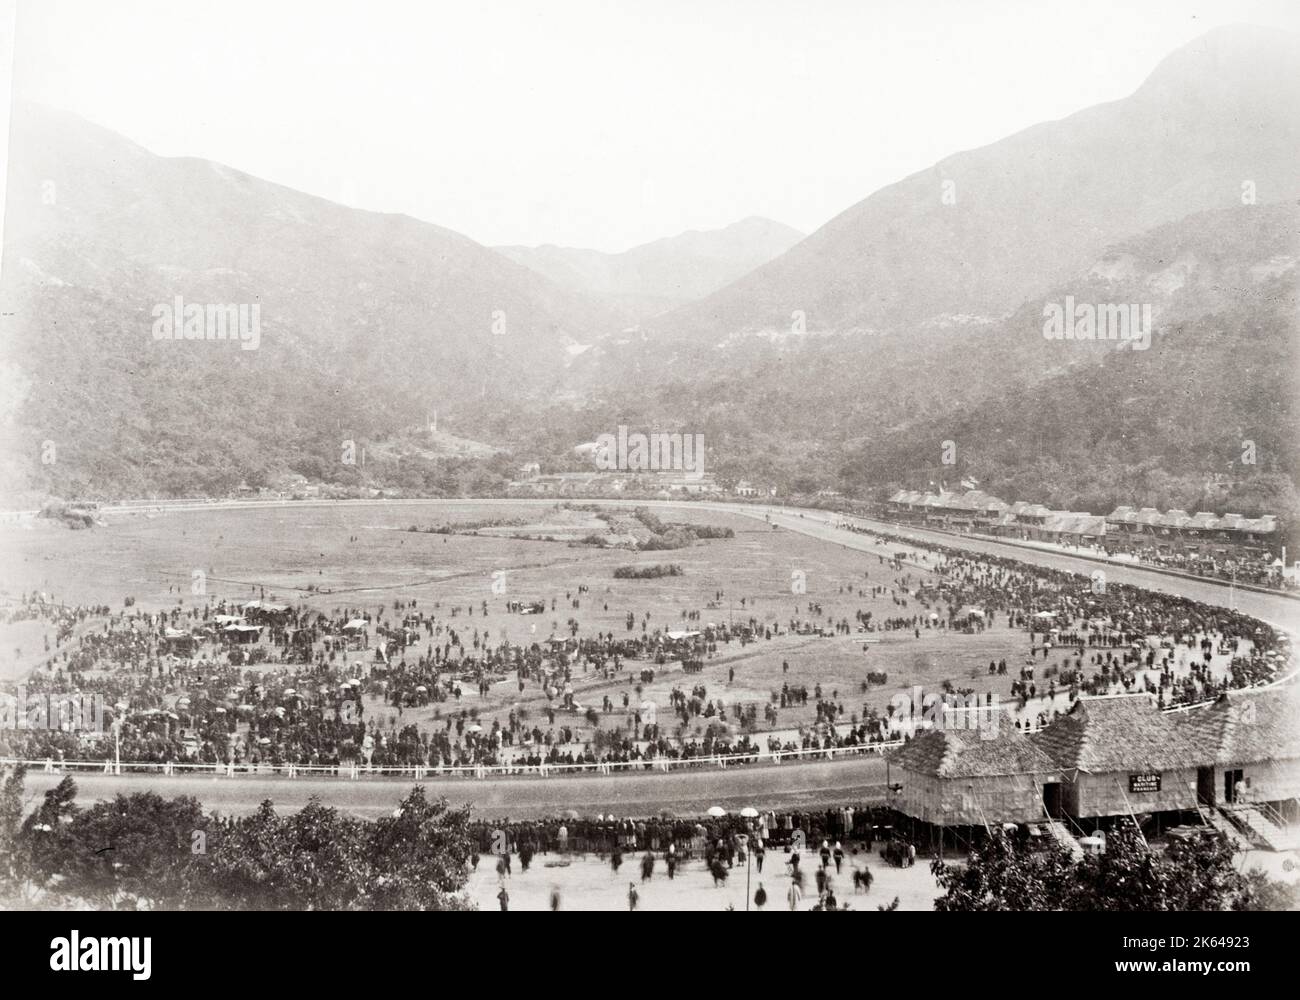 Photographie vintage du XIXe siècle : Hong Kong (Chine) c.1880 - une foule importante à une rencontre de course à cheval au Happy Valley racecourse. Banque D'Images